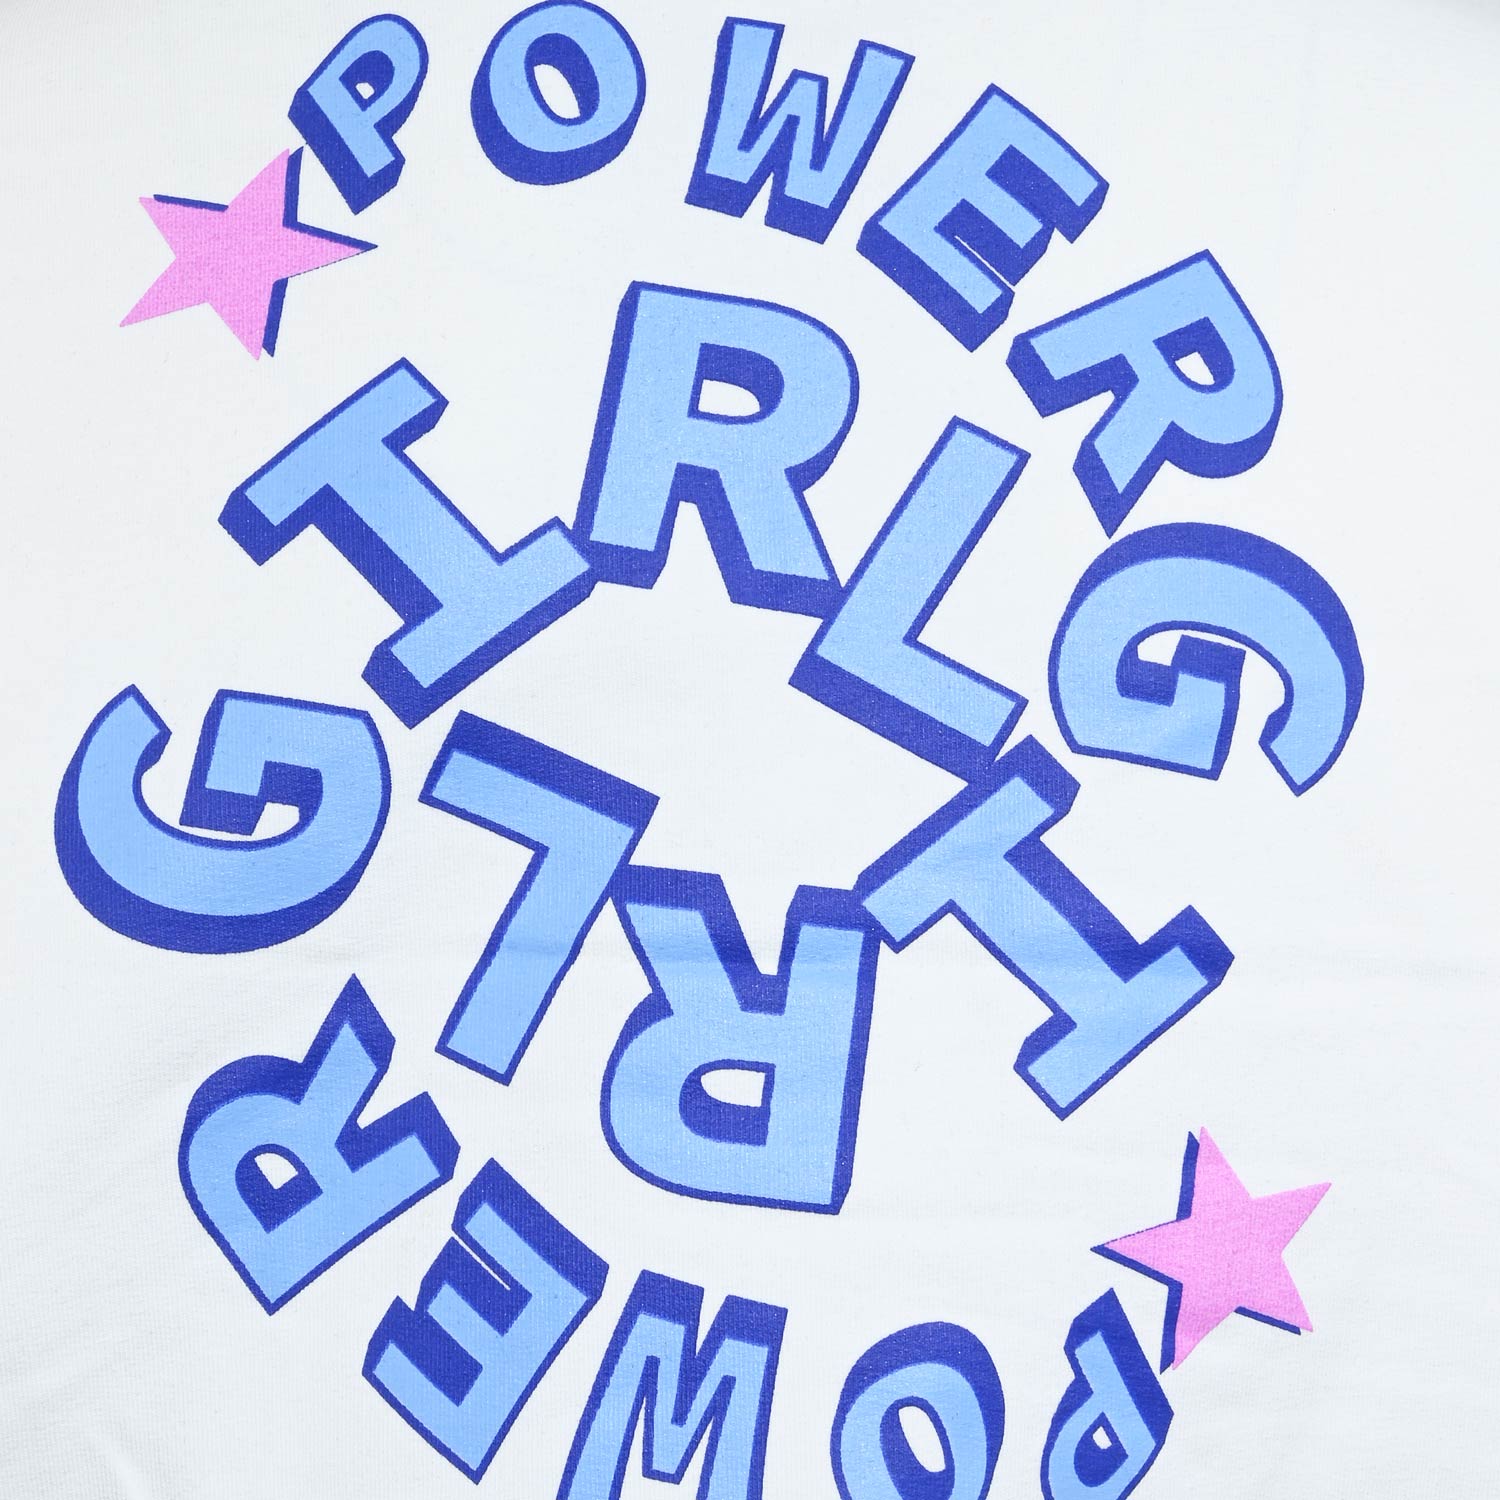 5944-Girls Sweatshirt -Power Girls